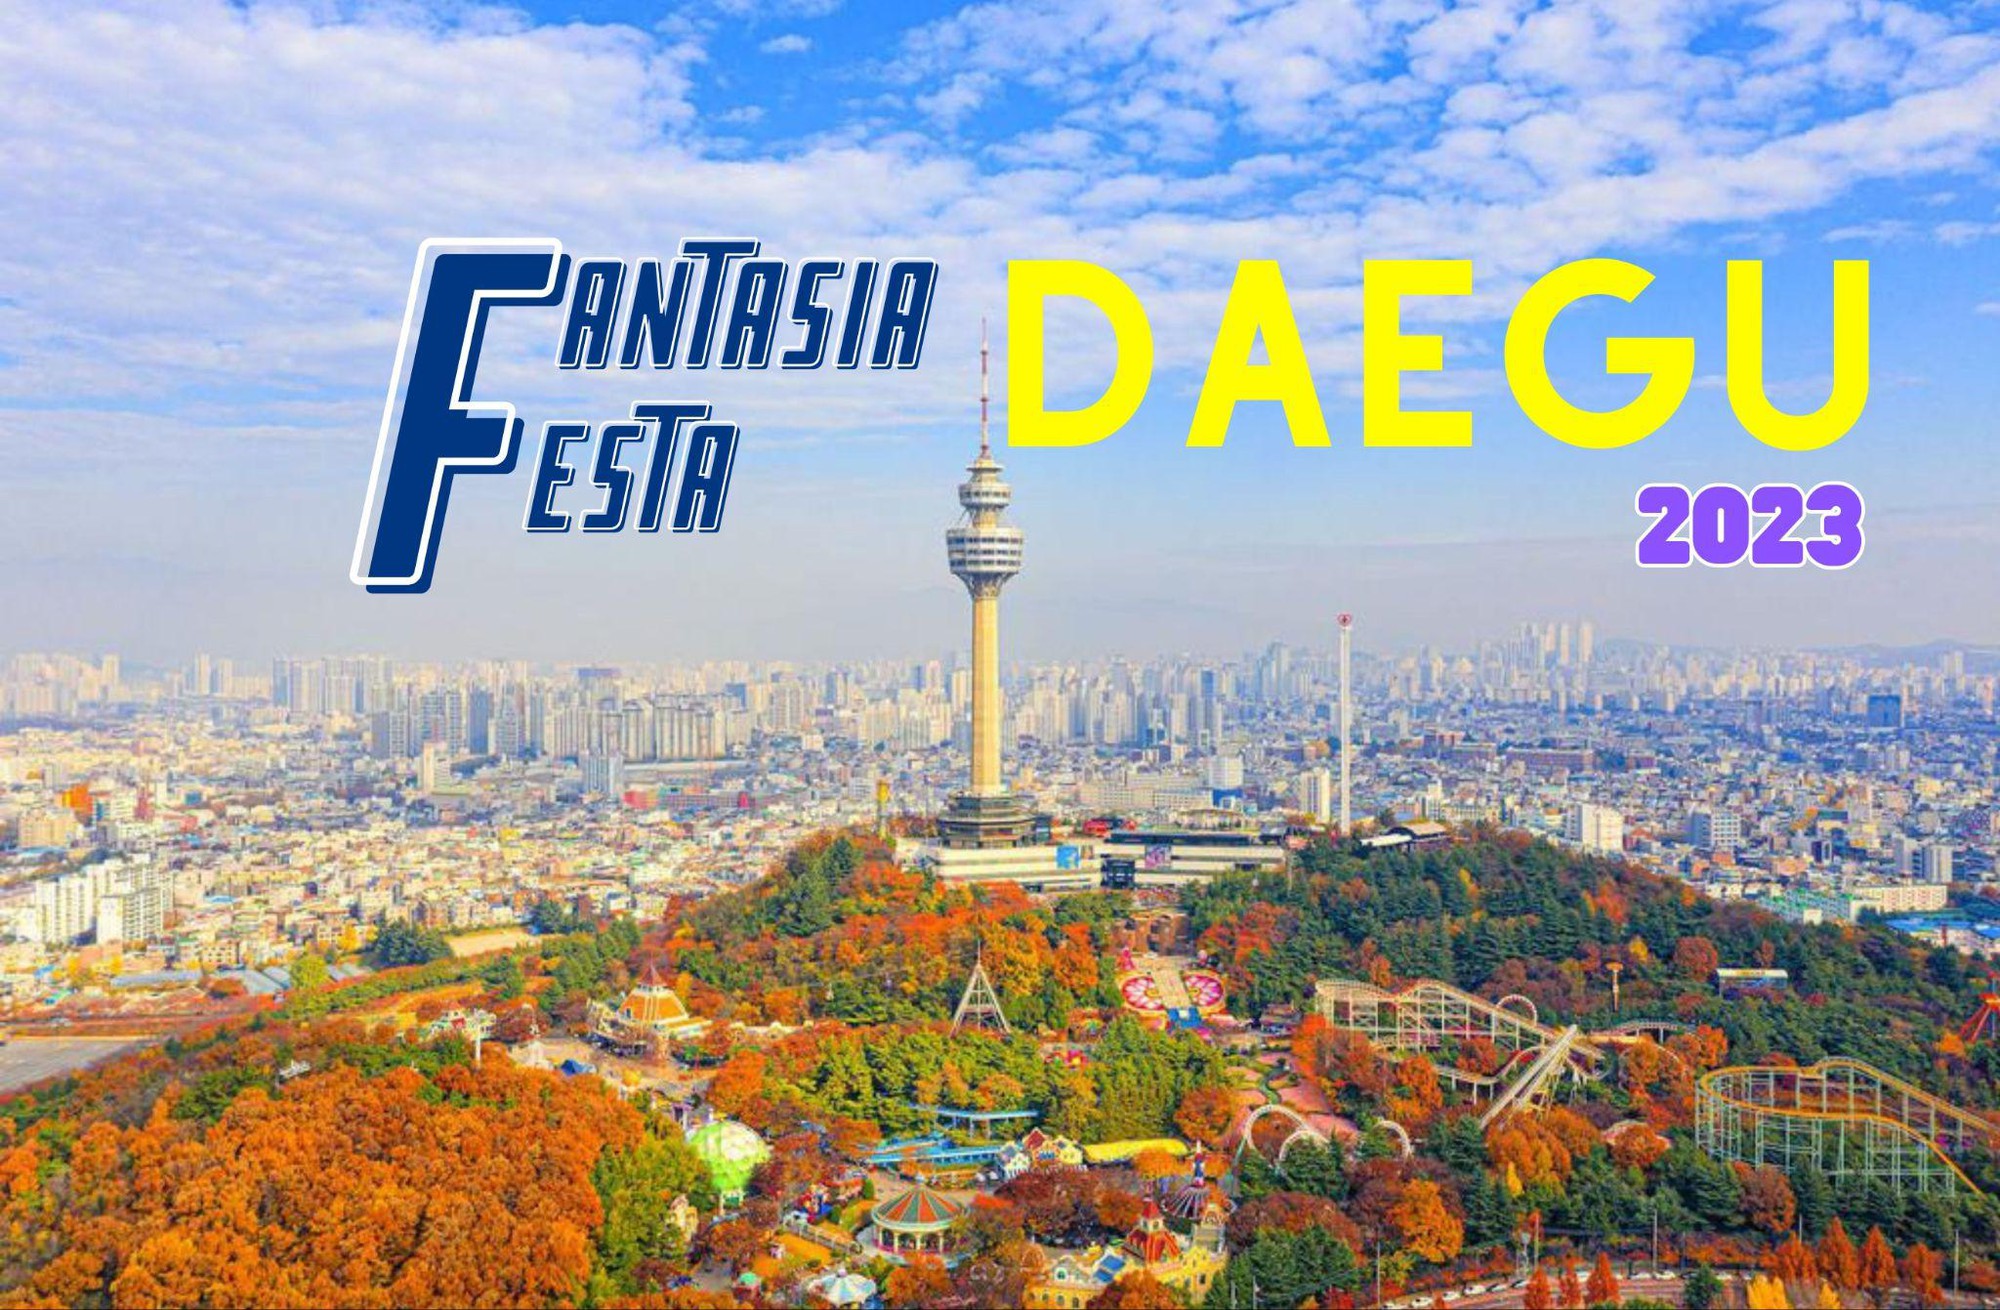 Lễ hội Fantasia Daegu Festa 2023, mê đắm vẻ đẹp đầy hấp dẫn của thành phố Daegu, Hàn Quốc - Ảnh 1.